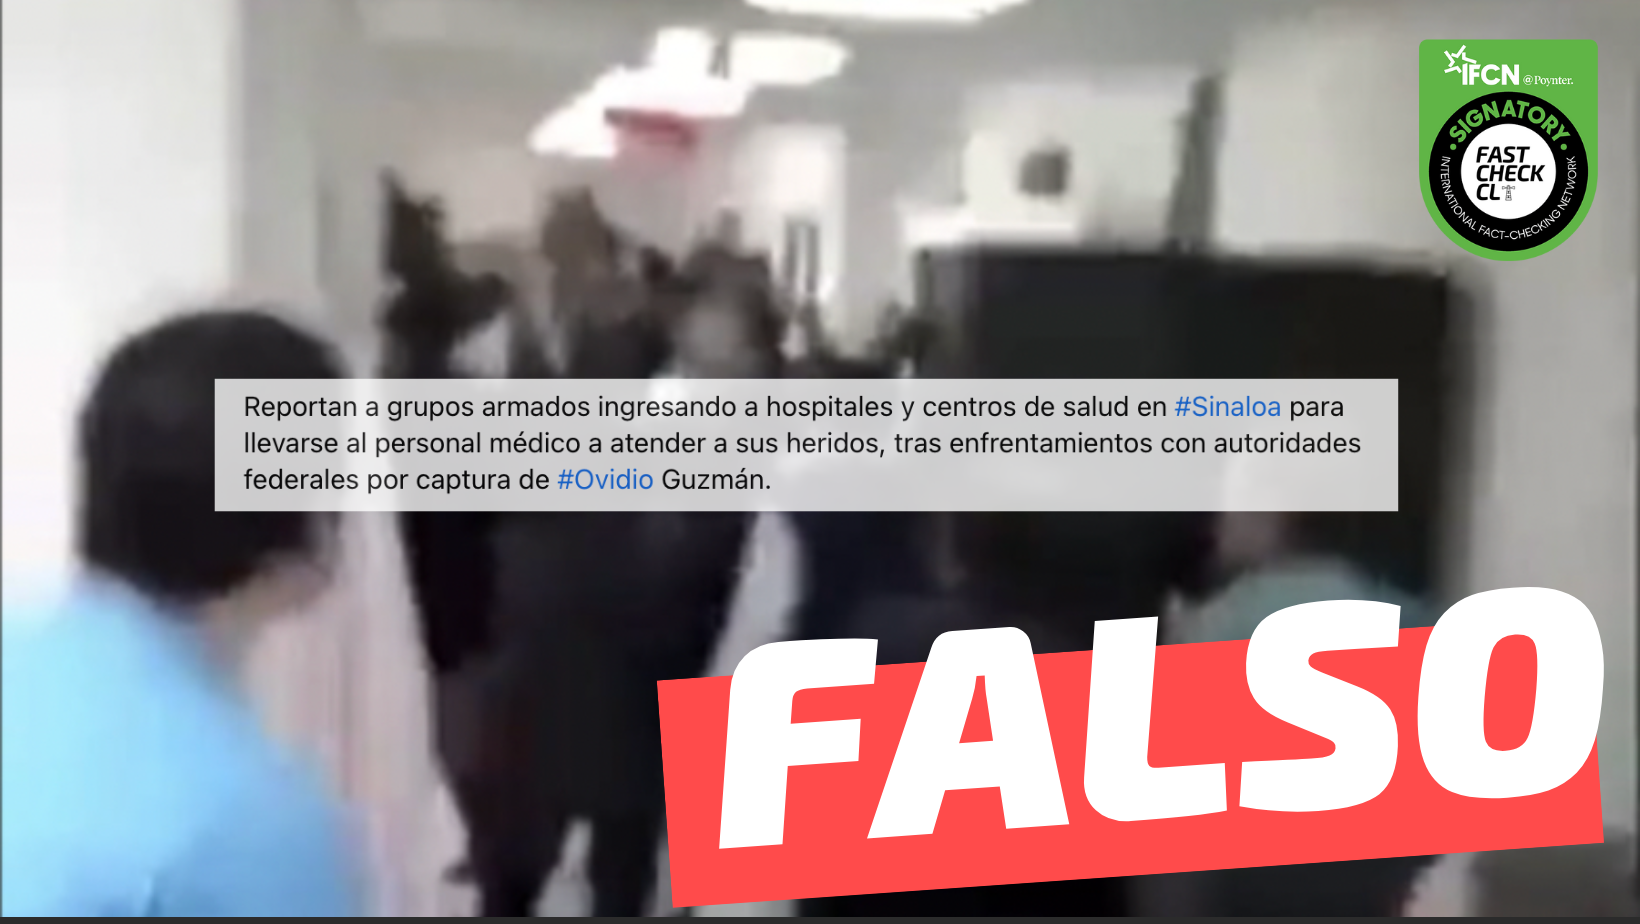 You are currently viewing (Video) “Reportan a grupos armados ingresando a hospitales y centros de salud en Sinaloa para llevarse al personal médico tras (…) captura de Ovidio Guzmán”: #Falso